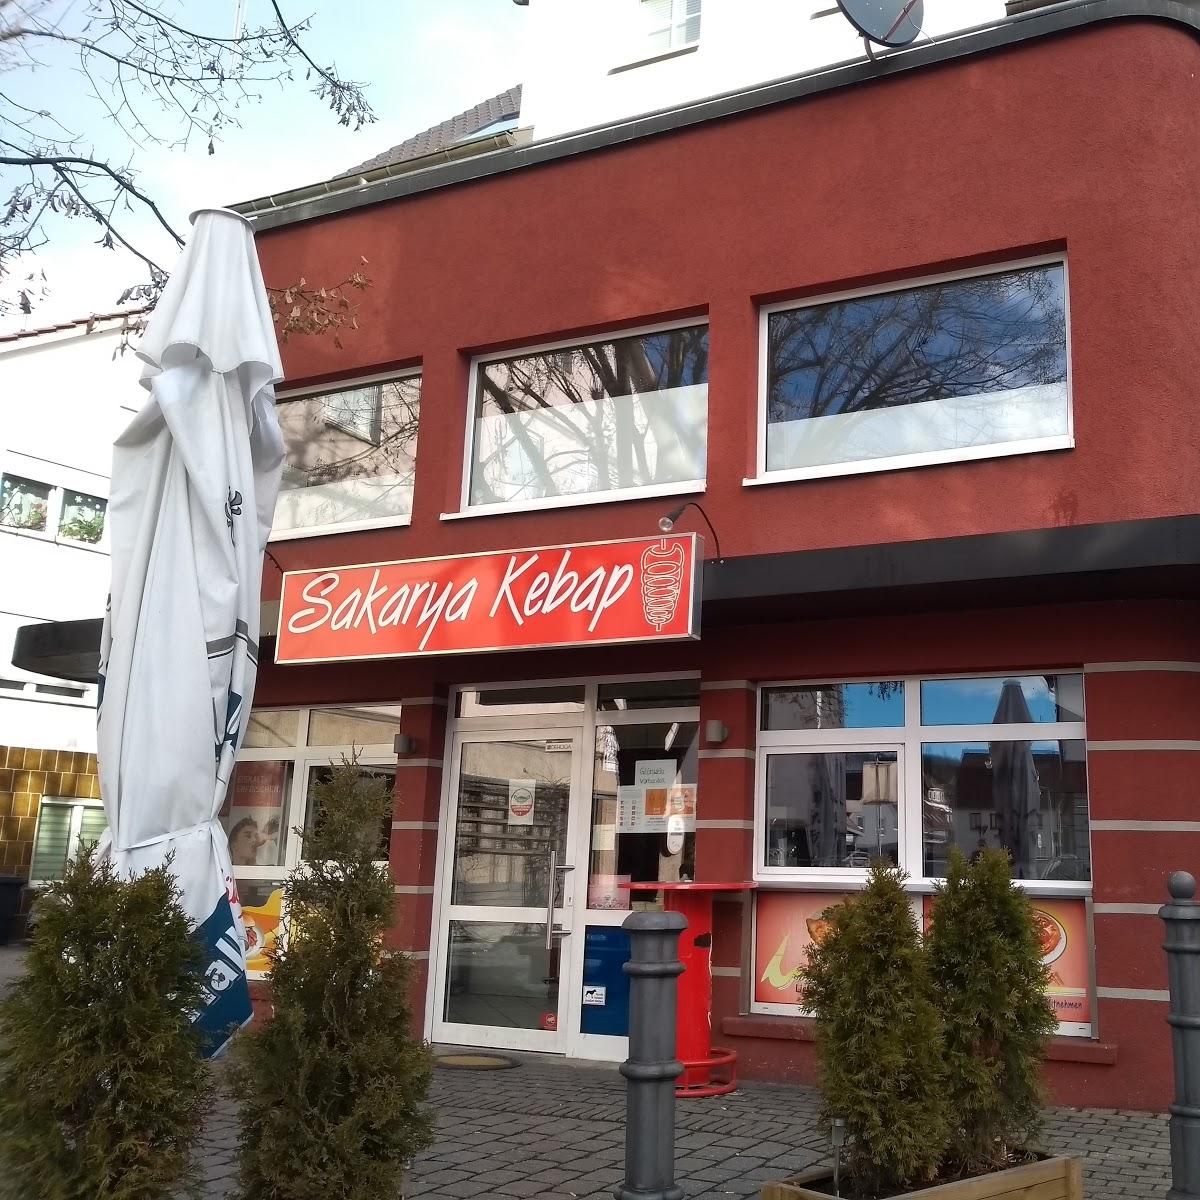 Restaurant "Sakarya Kebaphaus" in  Gaildorf